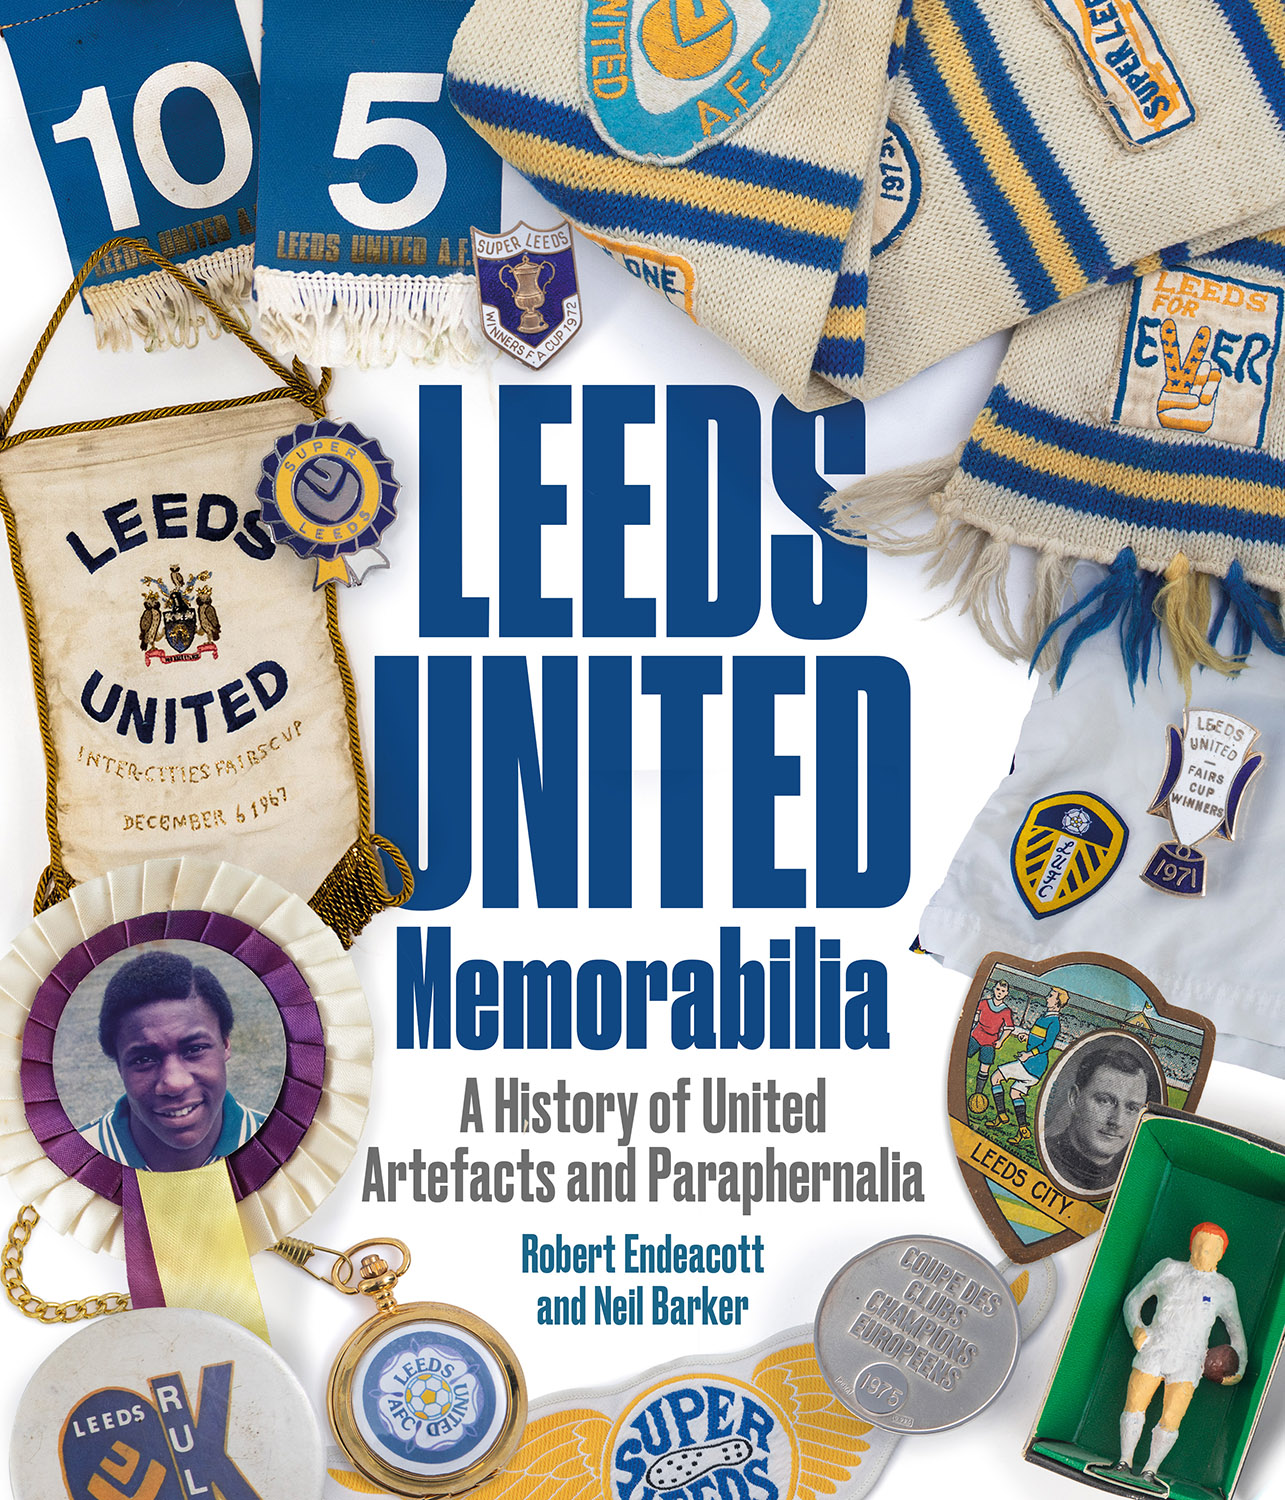 Leeds United Memorabilia